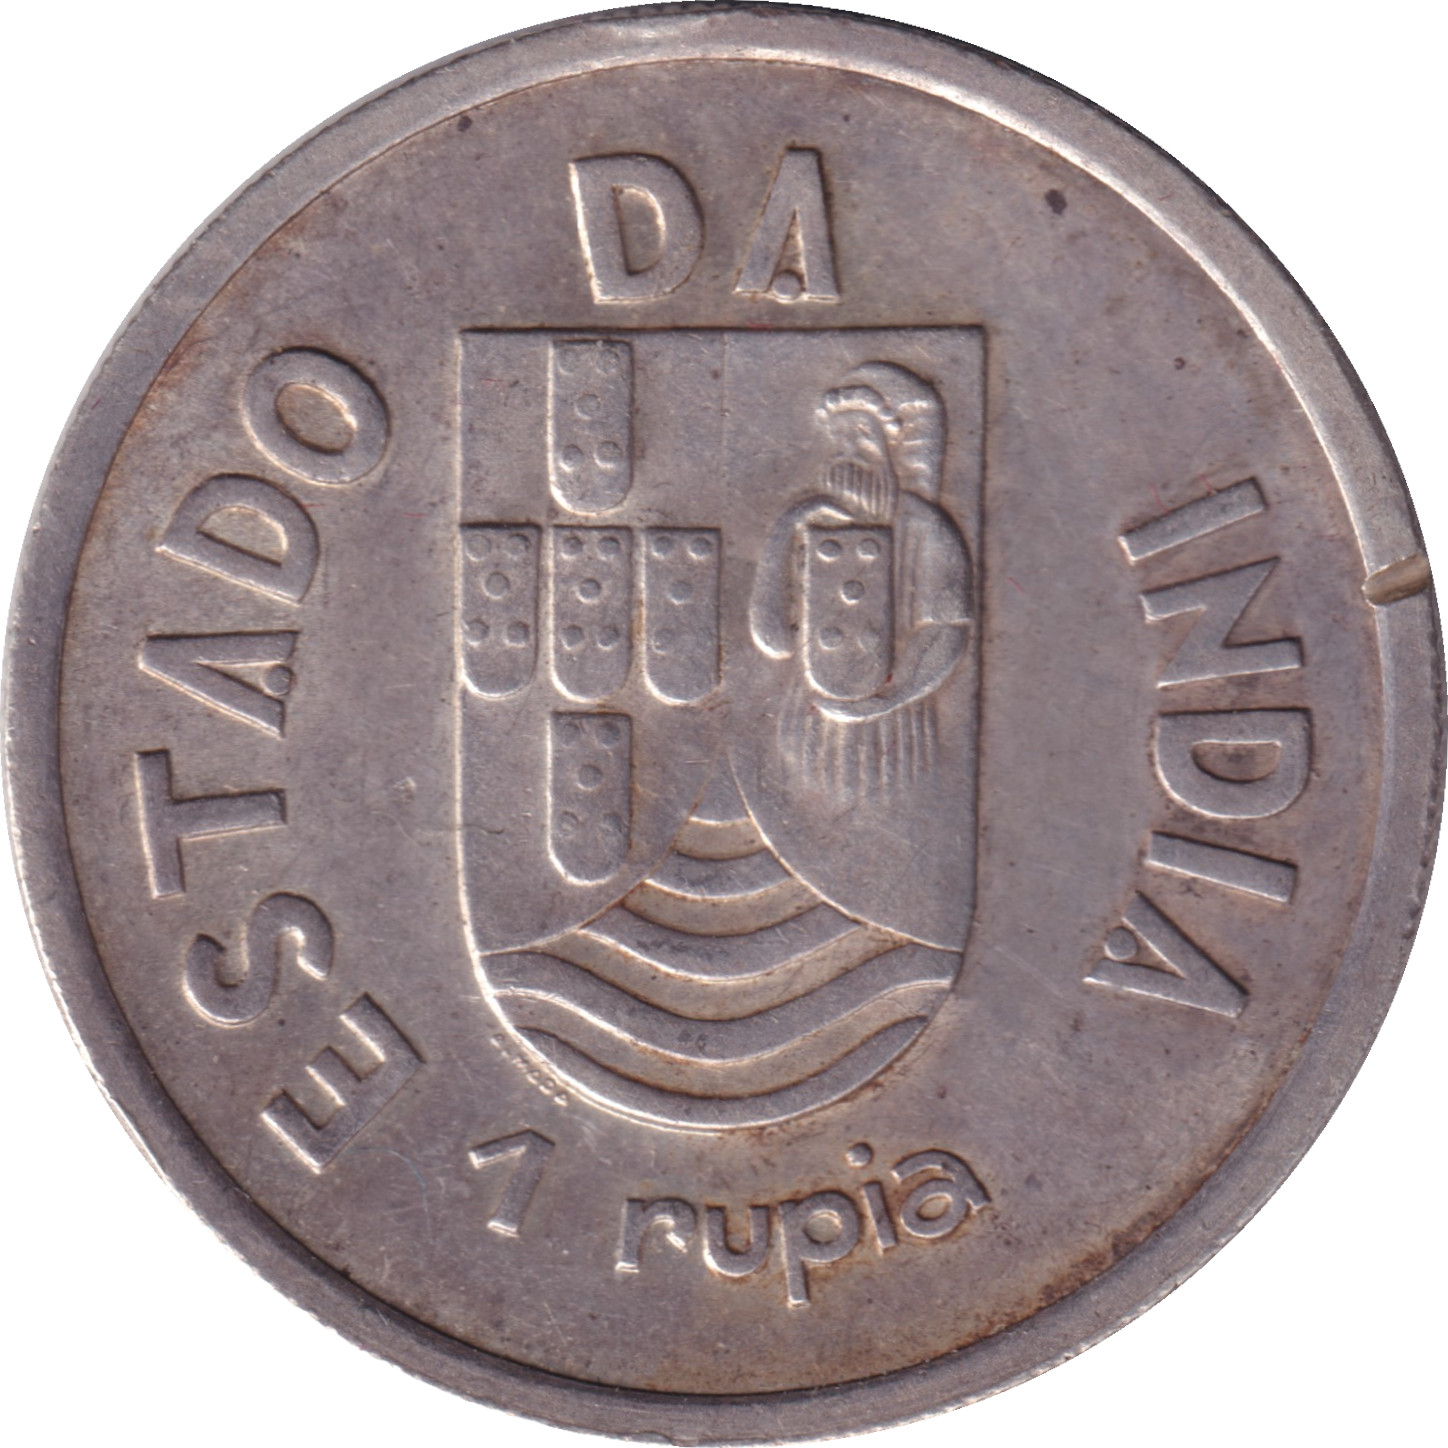 1 rupia - Estado Da India - Blason long